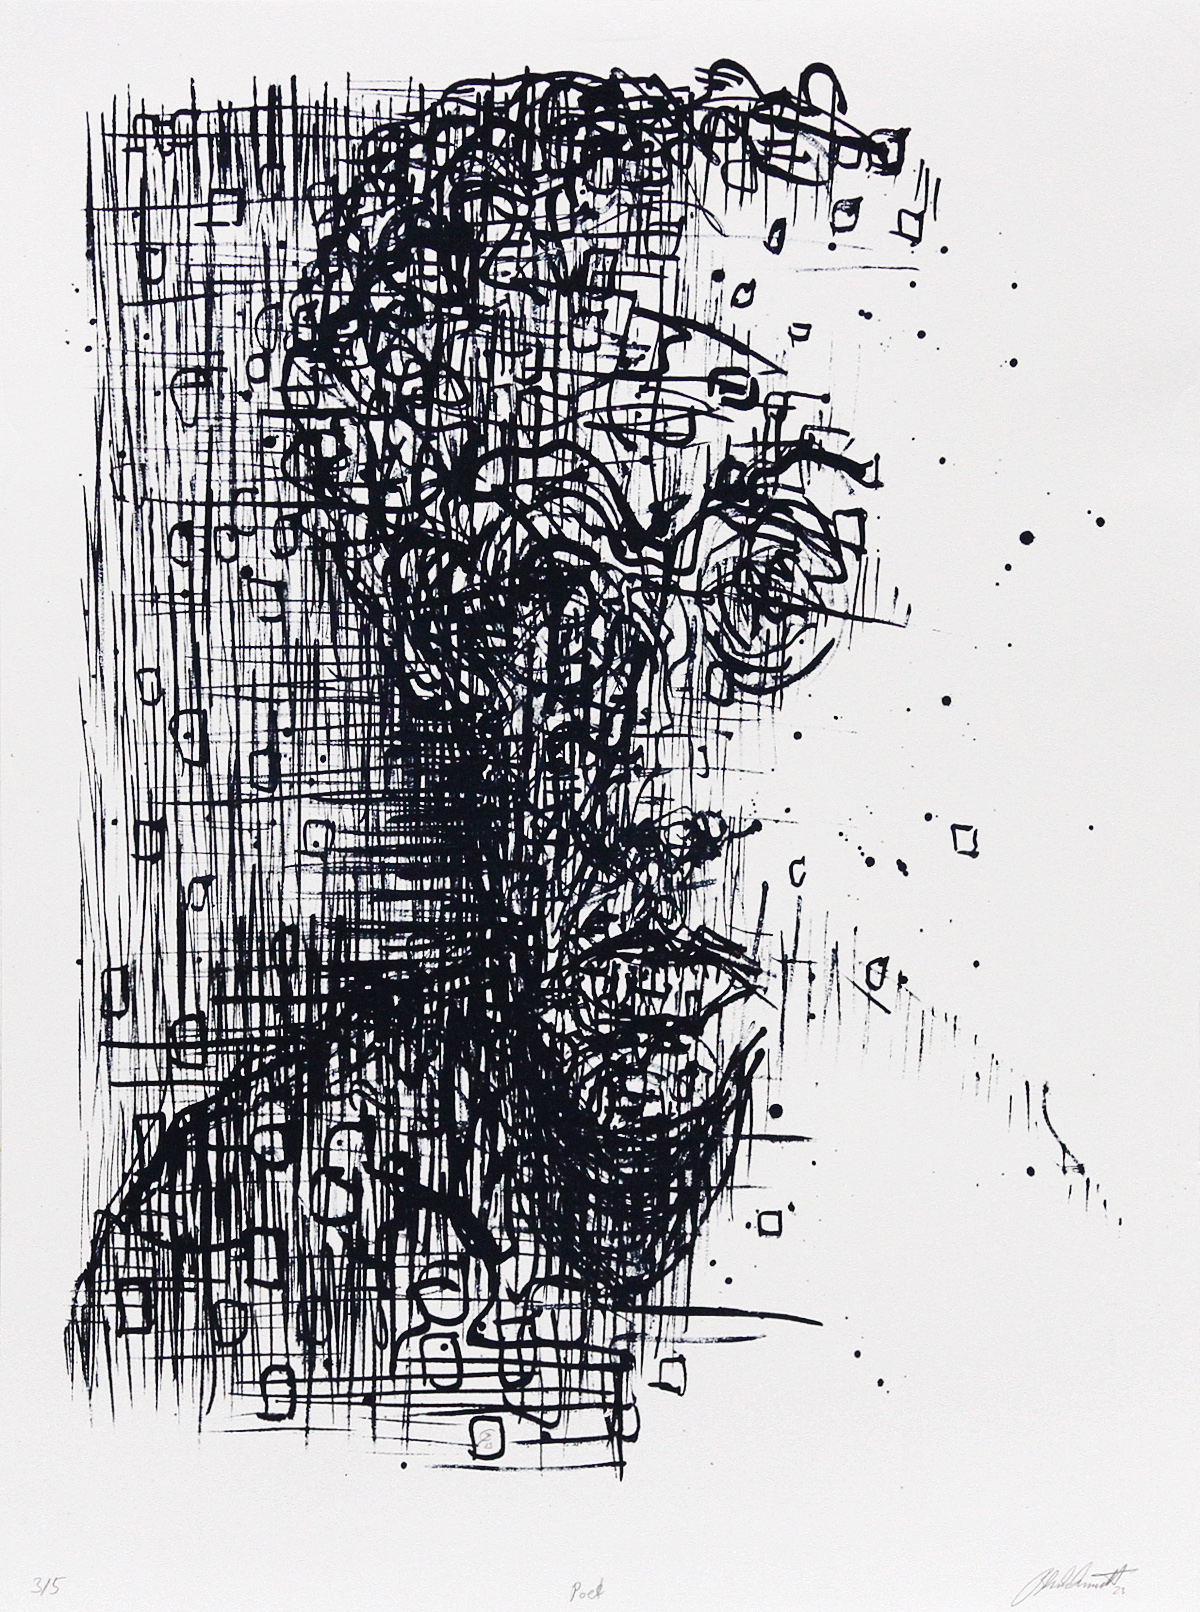 C. Blechschmidt: "Poet", Originale Grafik/Lithographie